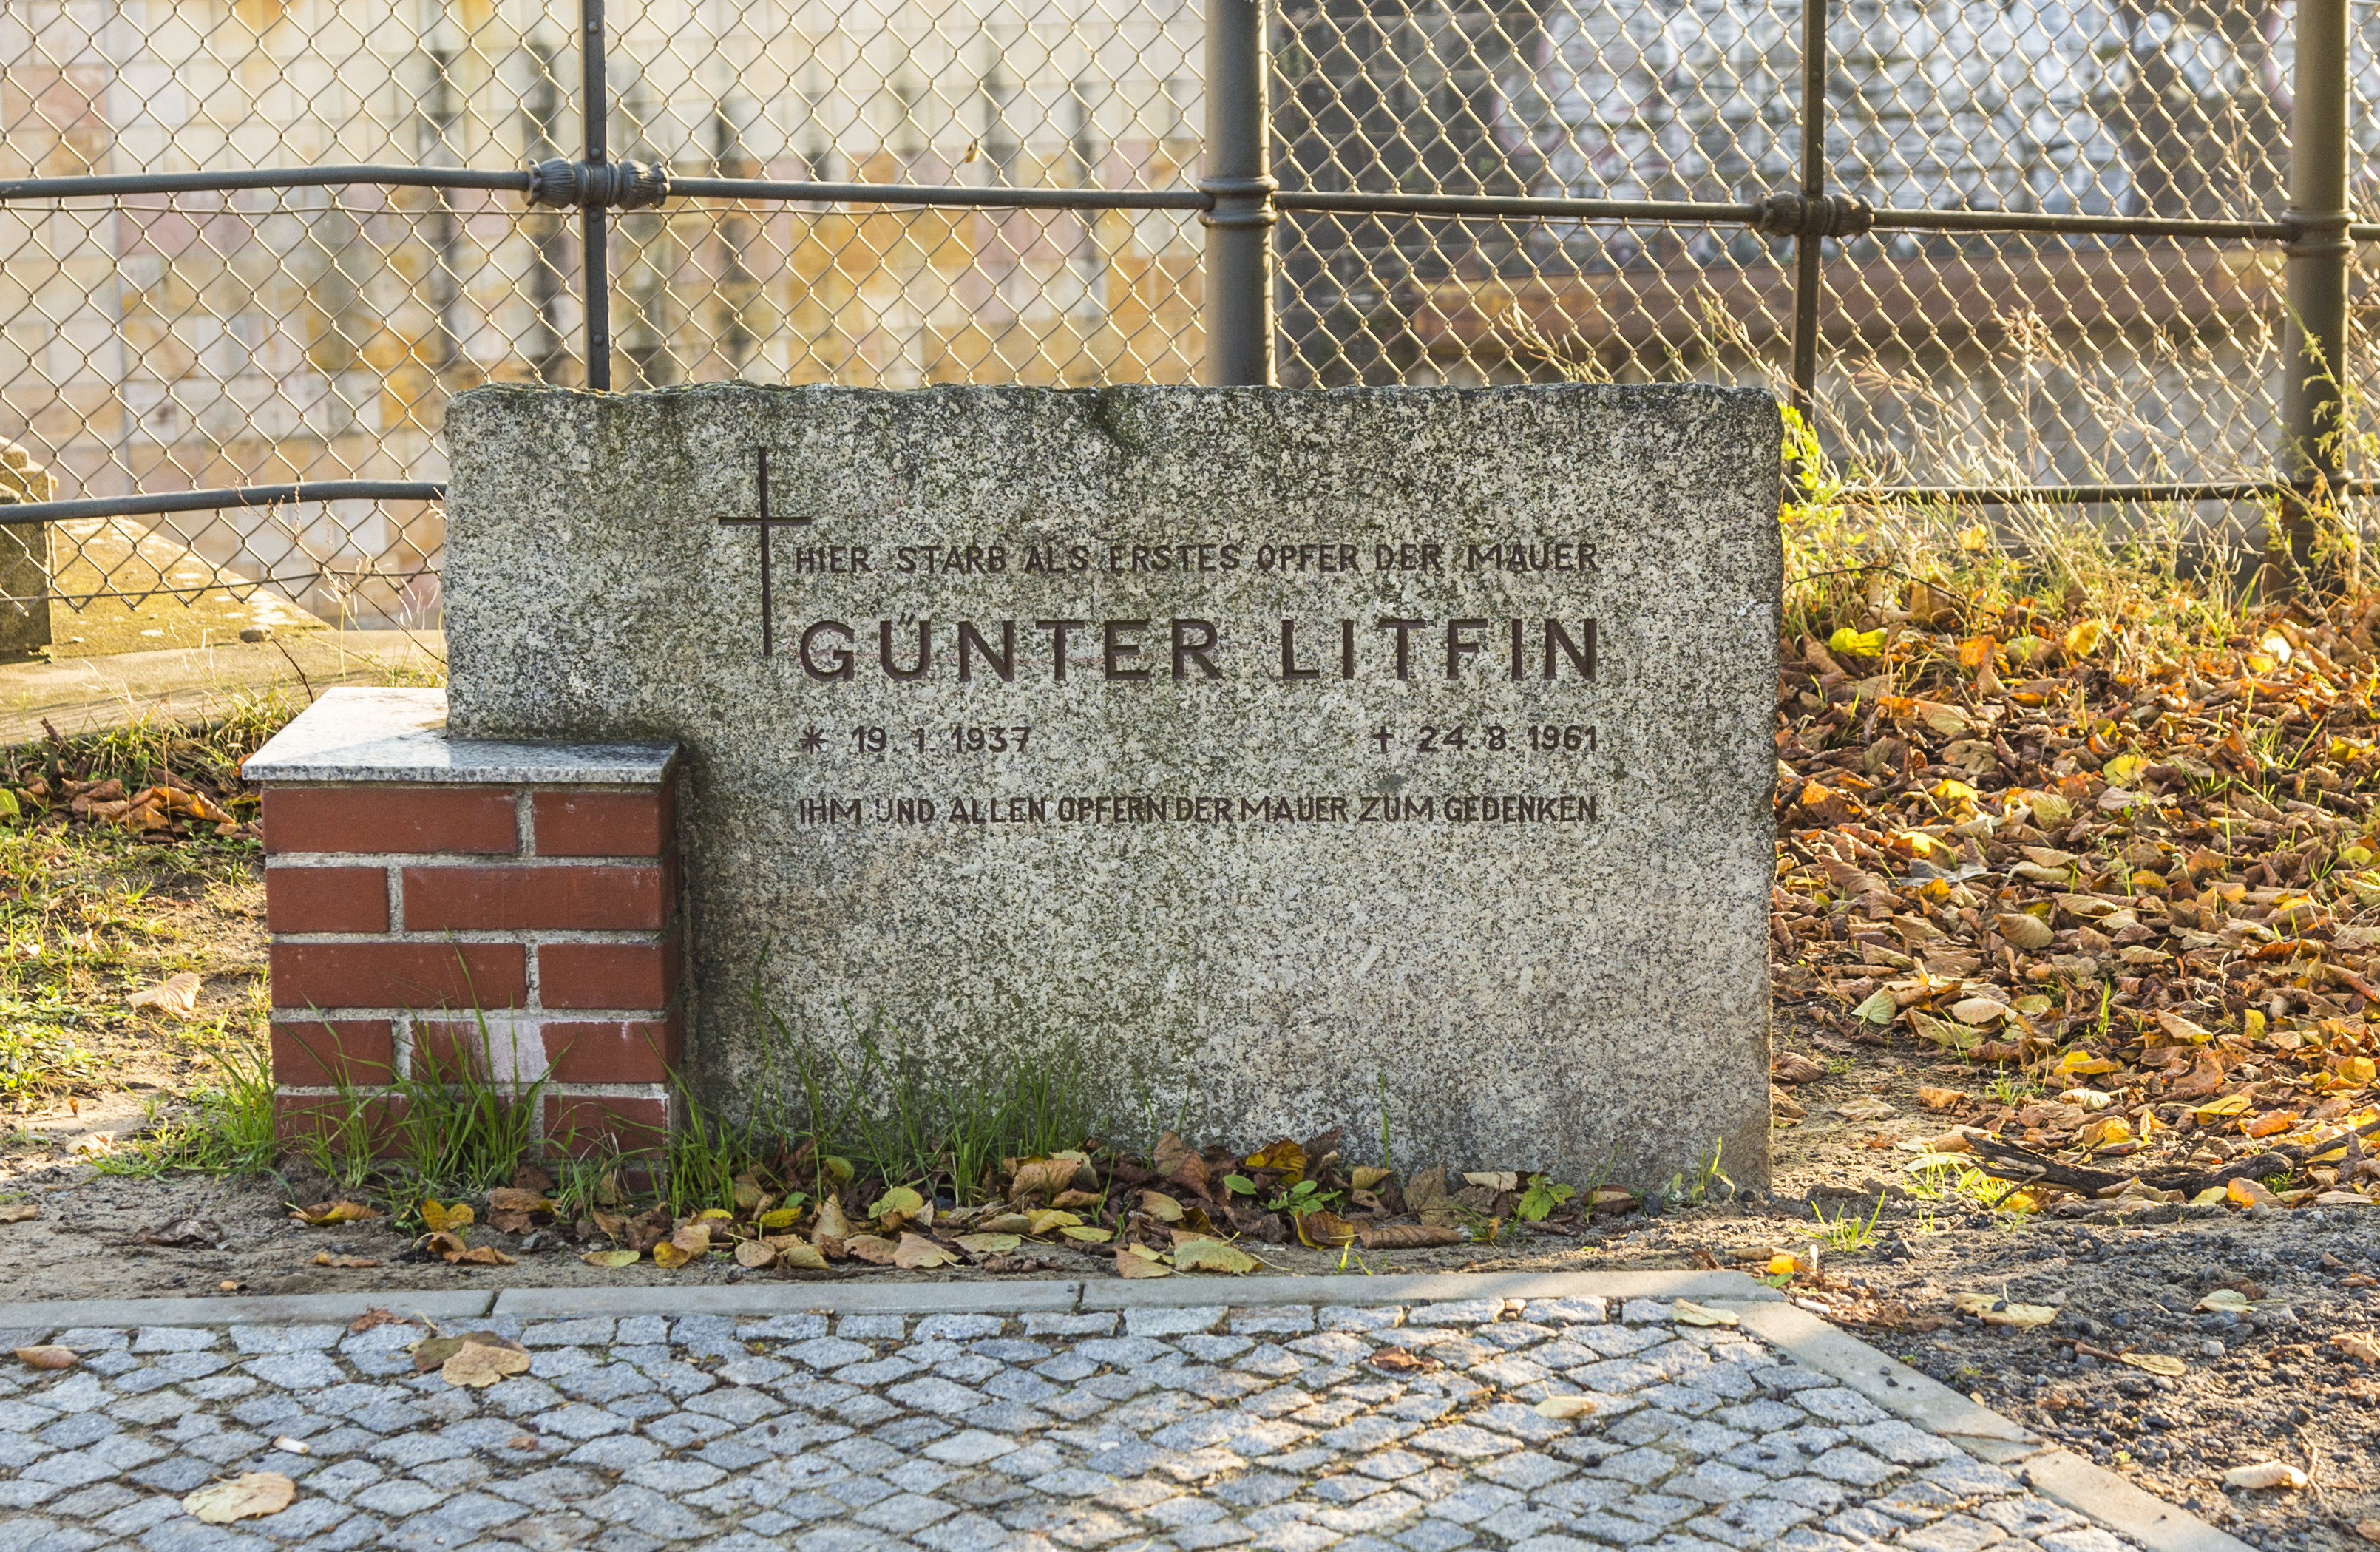 Gunter Litfin memorial